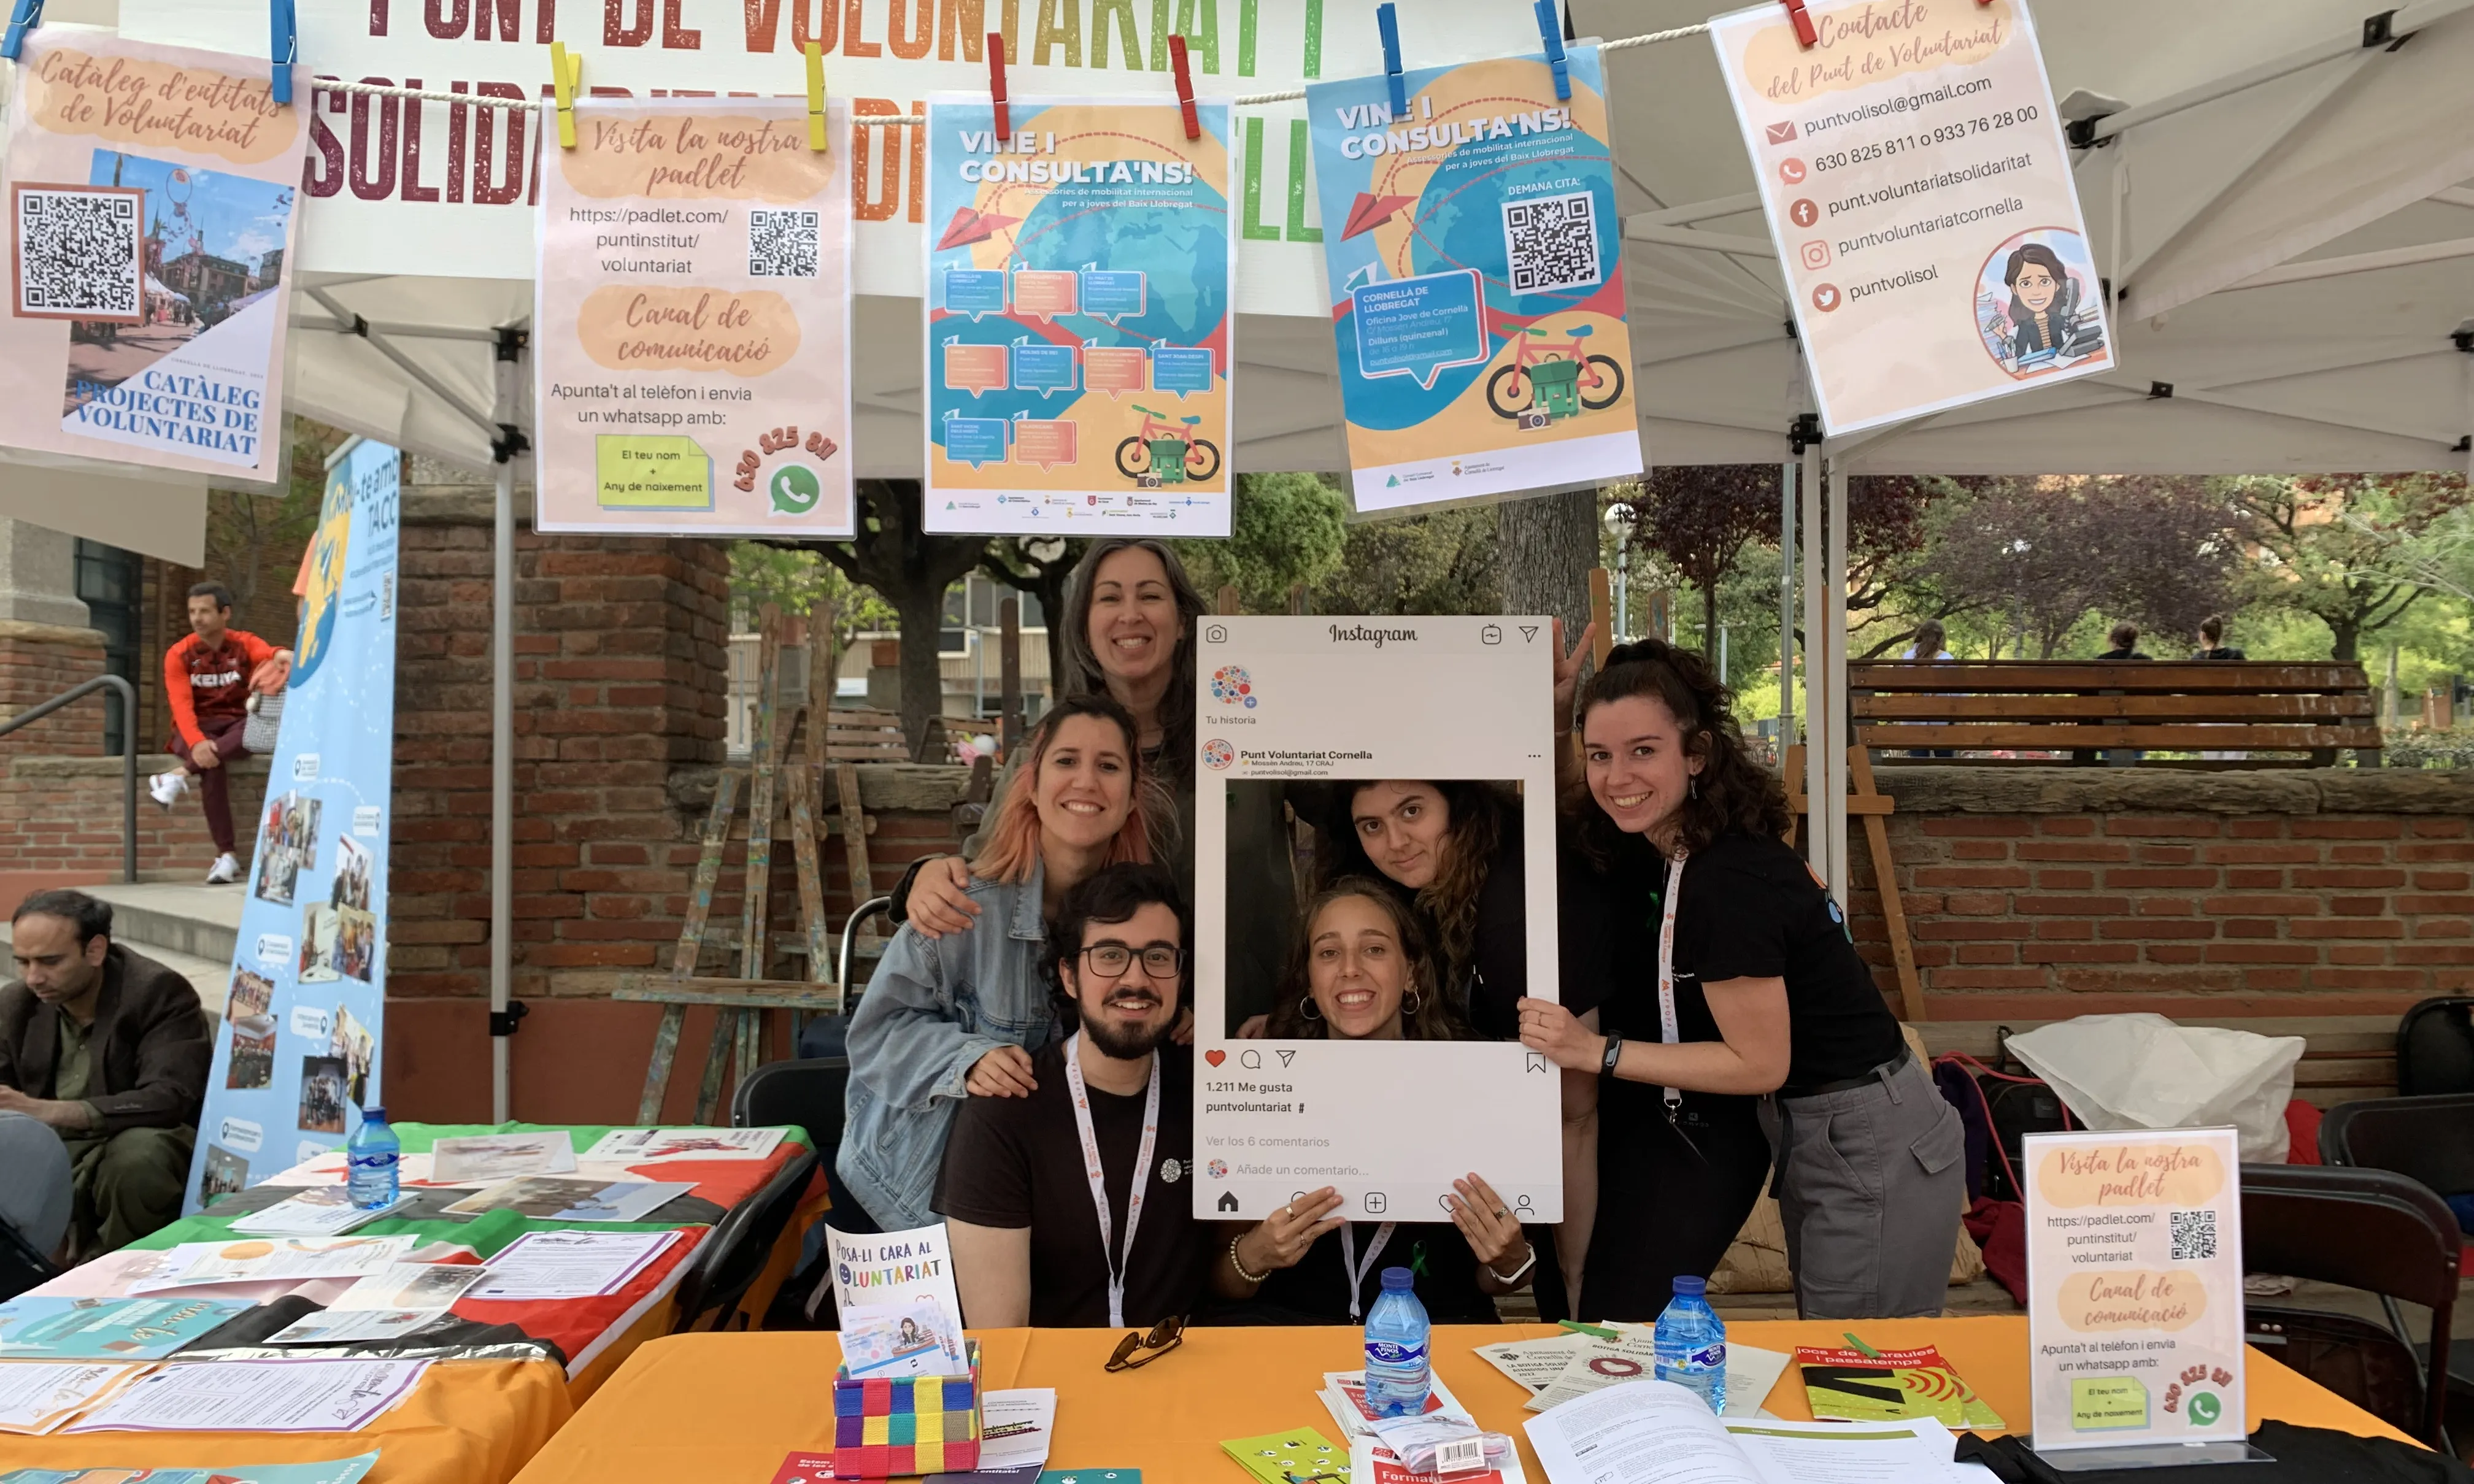 Els Punts de voluntariat local de Catalunya promouen el voluntariat entre la ciutadania.